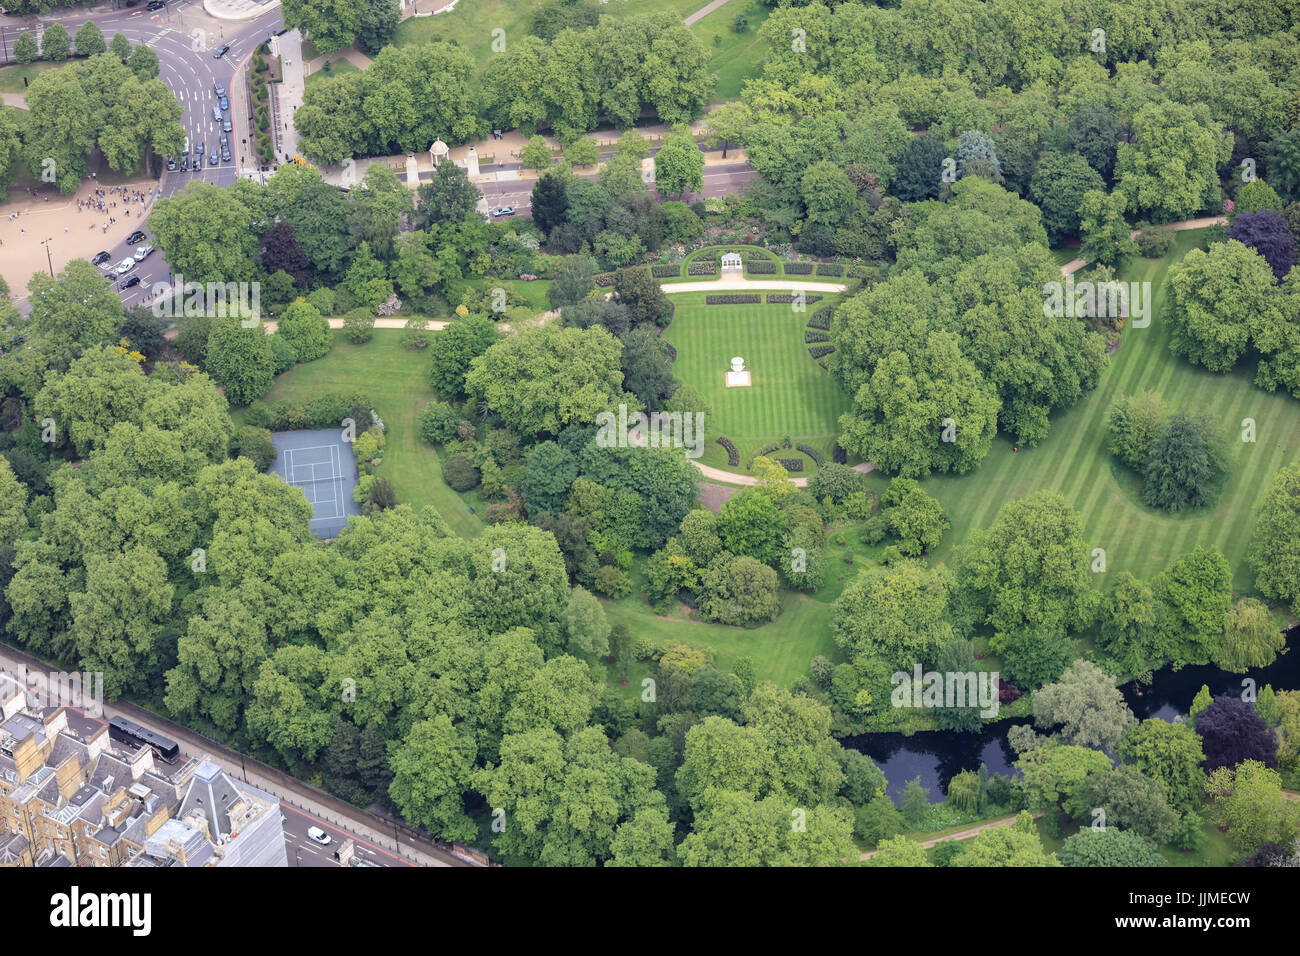 Une vue aérienne de les jardins de Buckingham Palace, avec le Vase Waterloo visible sur la pelouse Banque D'Images